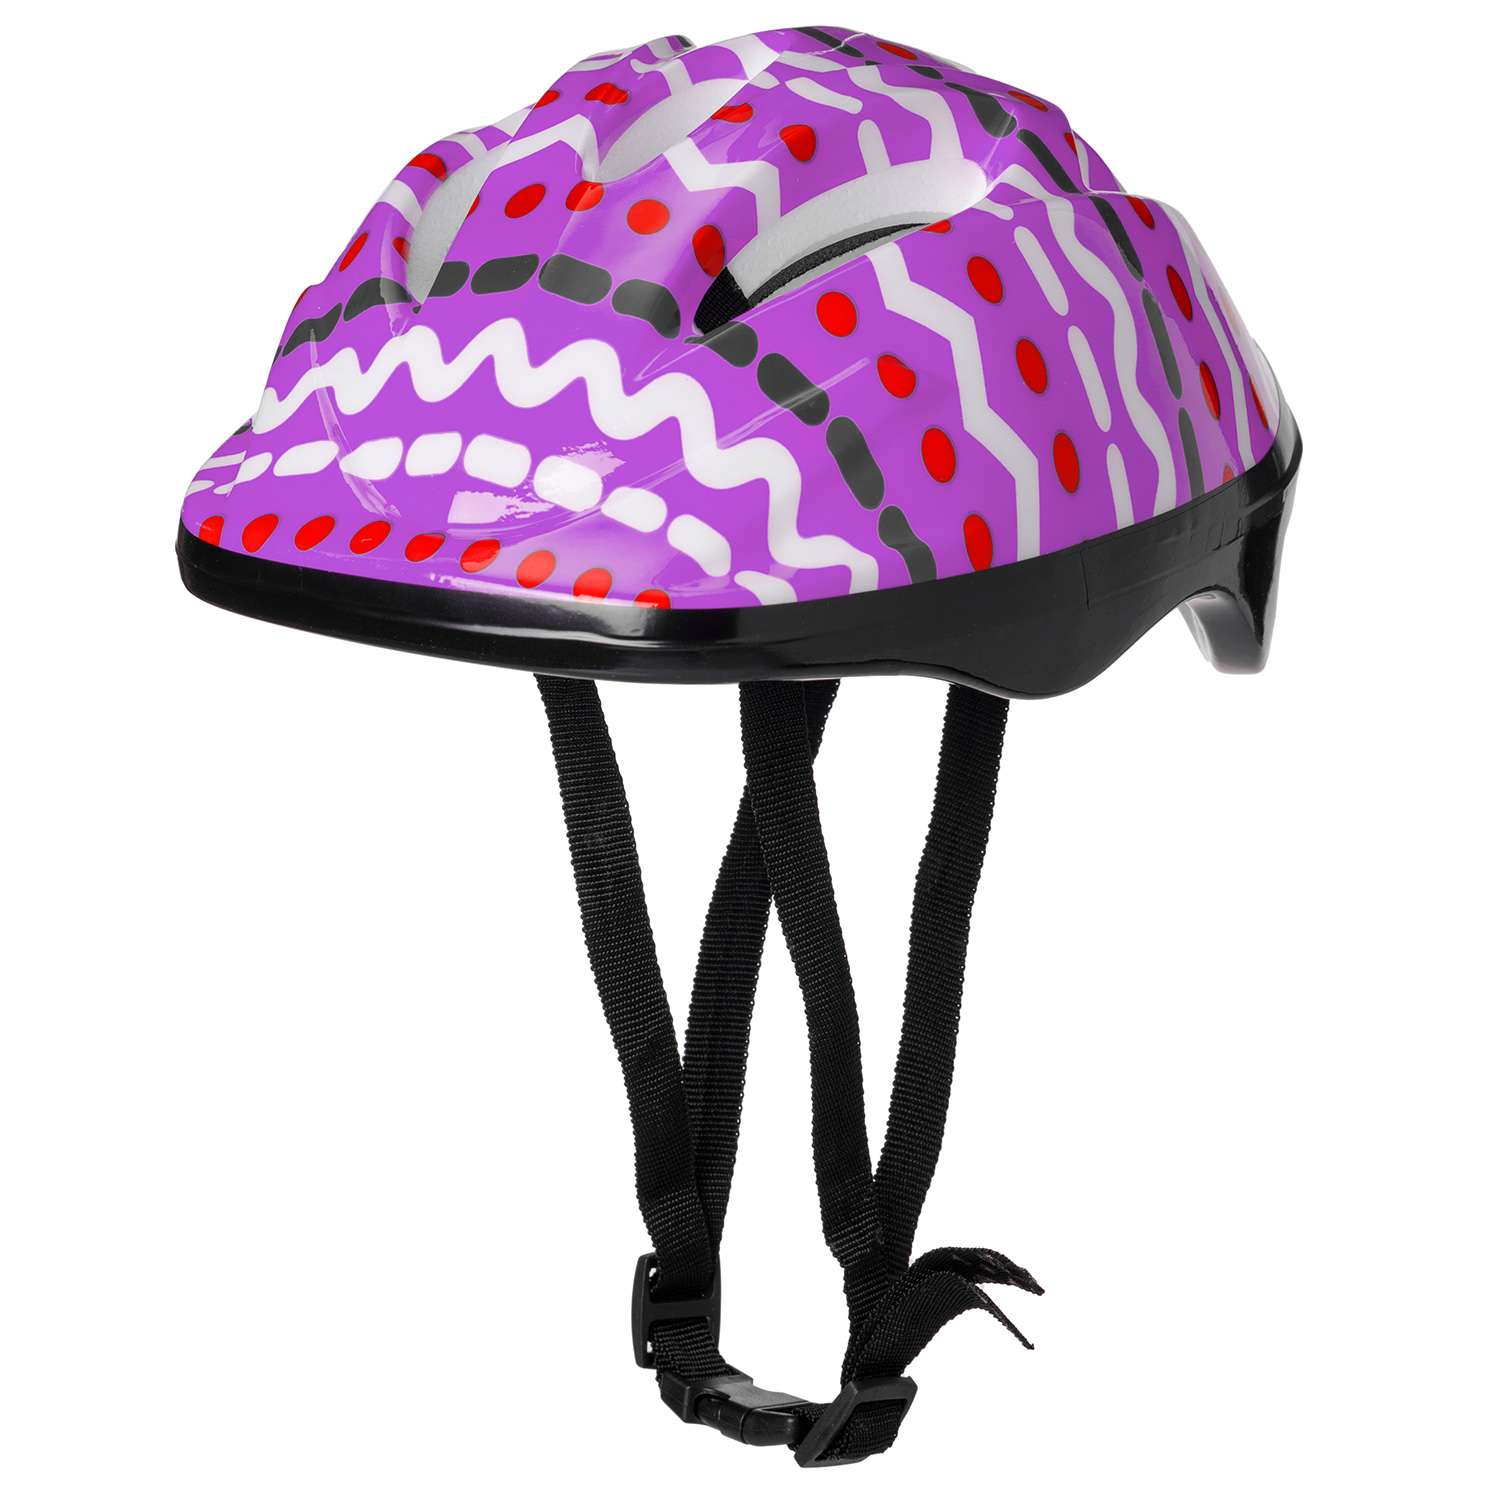 Защита Шлем BABY STYLE для роликовых коньков фиолетовый принт обхват 57 см - фото 1